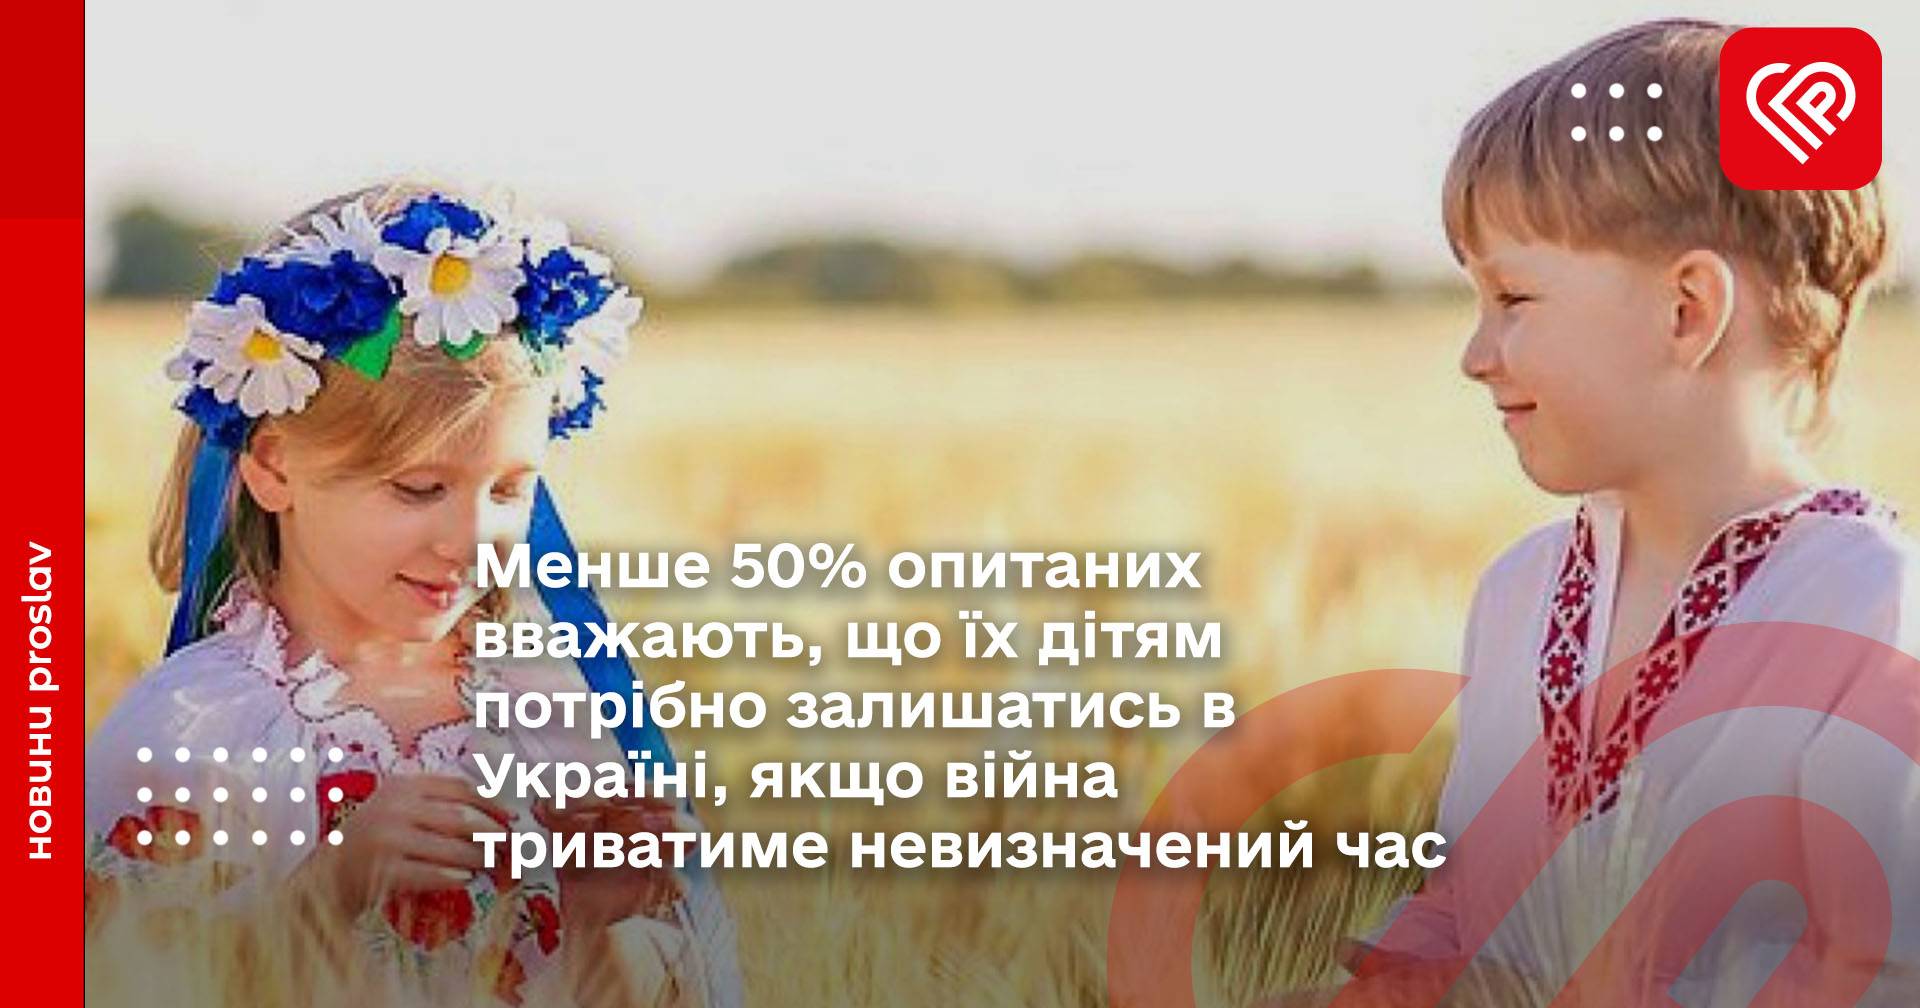 Менше 50% опитаних вважають, що їх дітям потрібно залишатись в Україні, якщо війна триватиме невизначений час